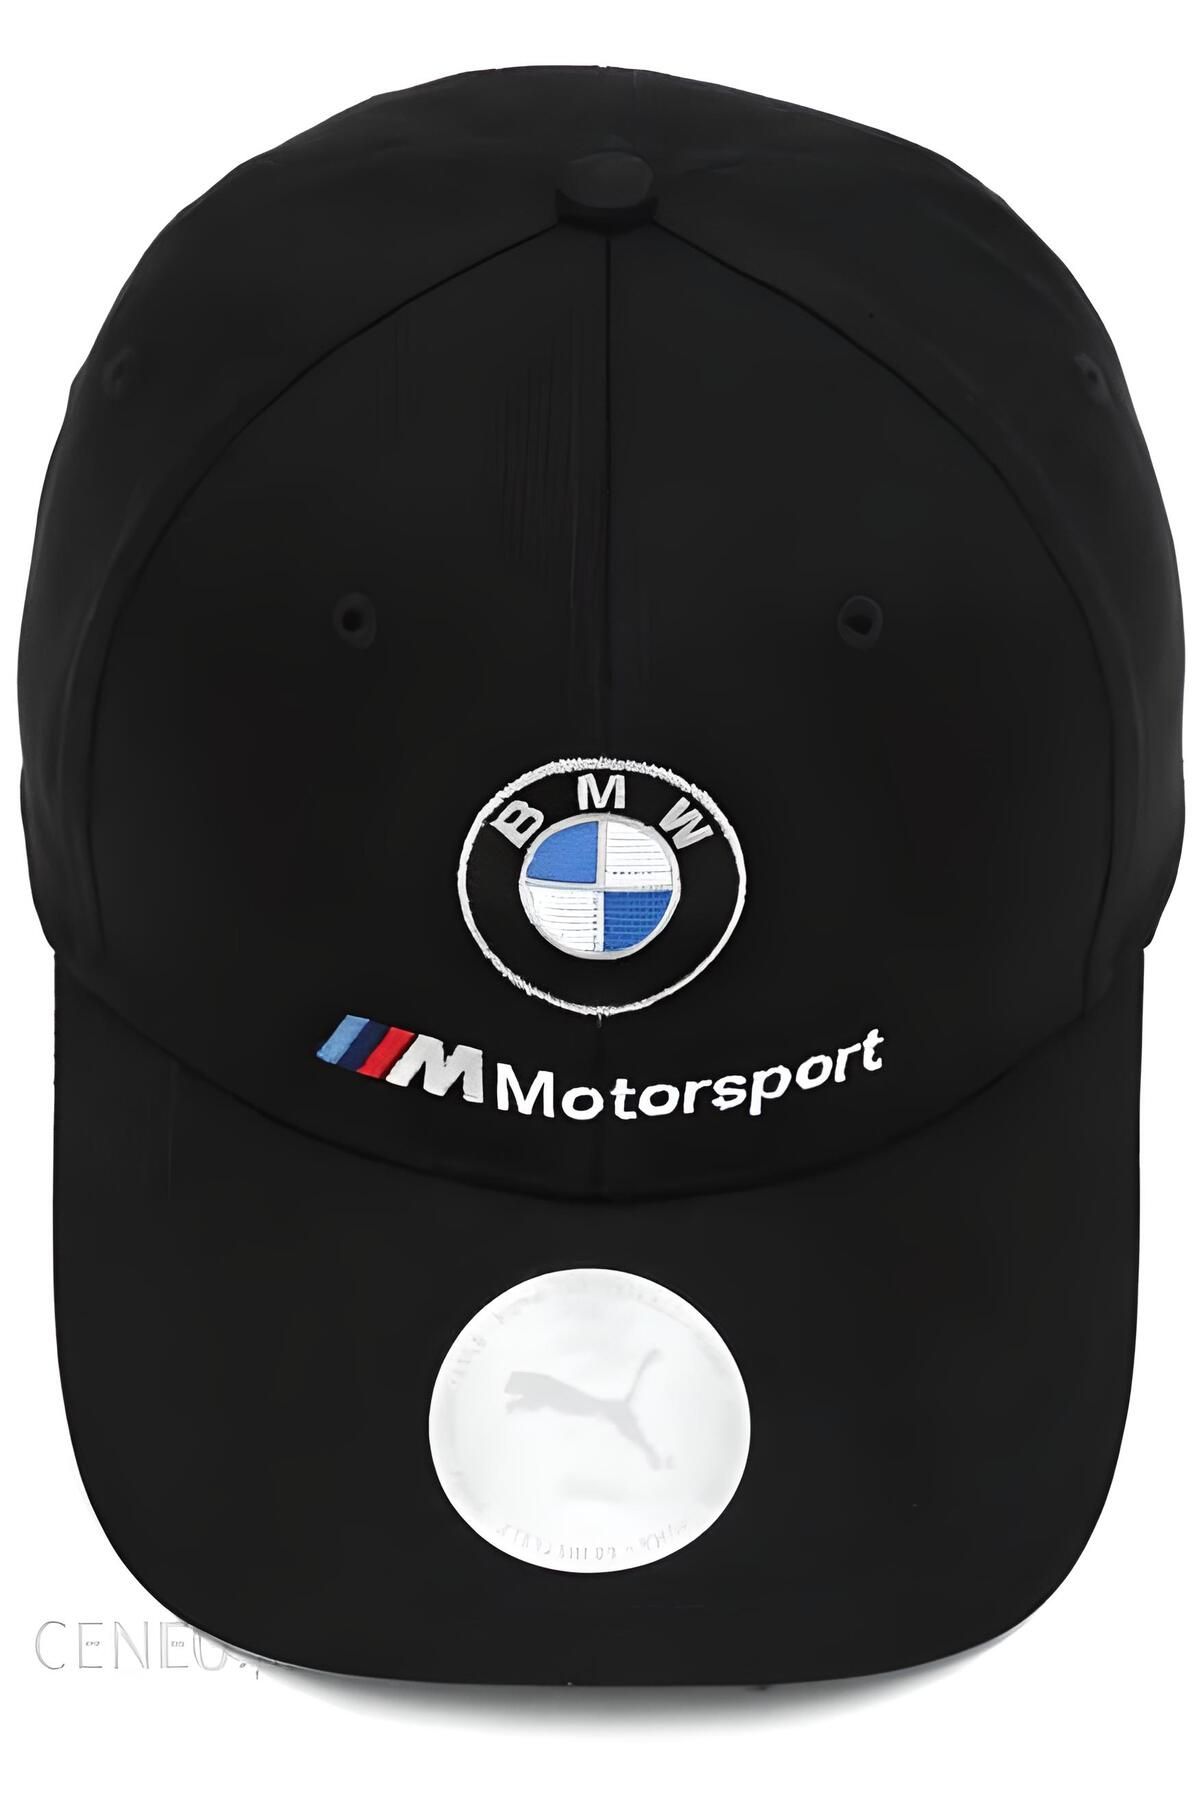 PUMA BMW Hat BMW M Motorsport Cap Men's BMW Logo Hat Cap White